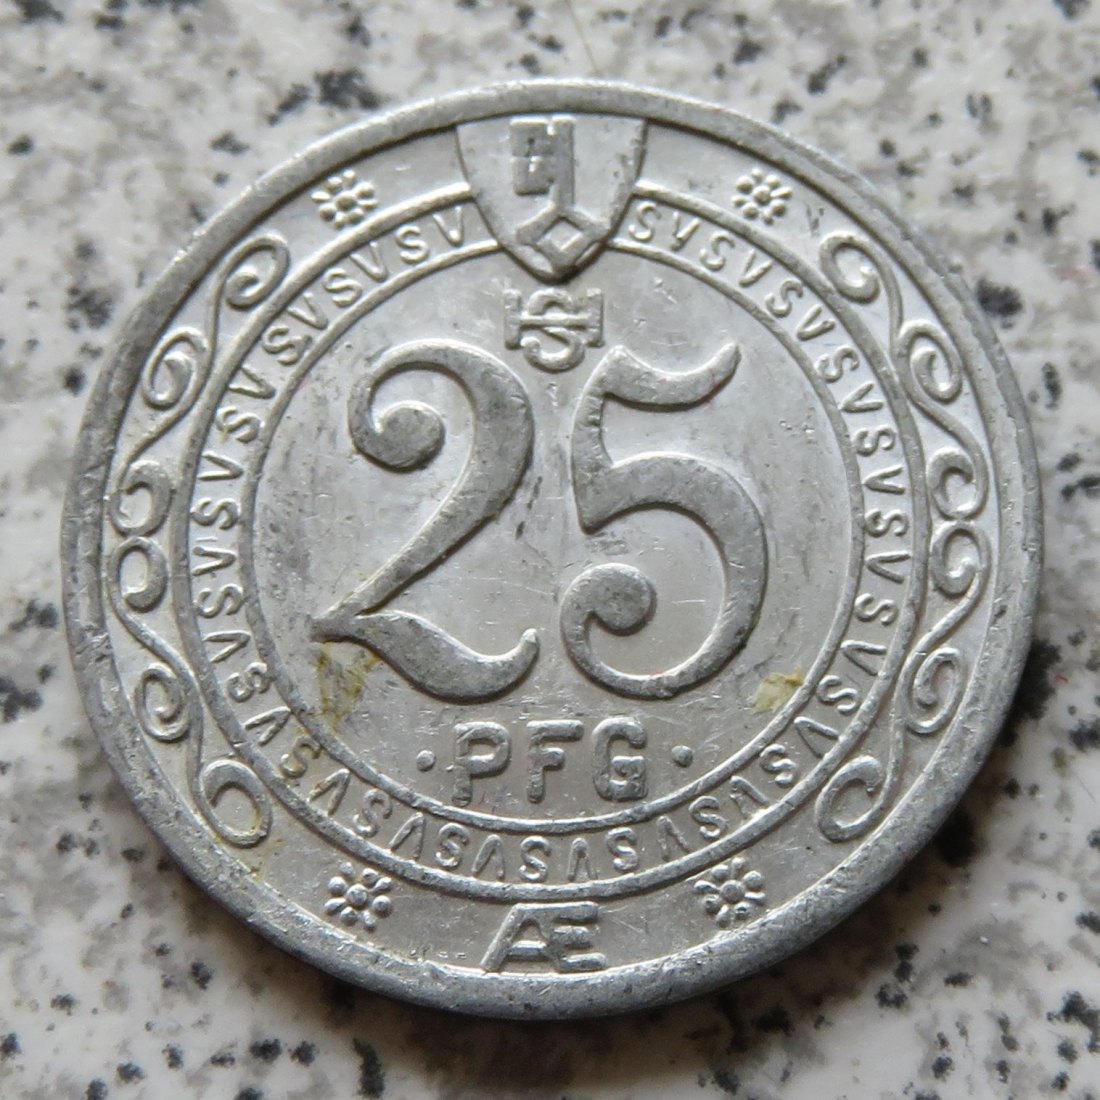  Soest 25 Pfennig 1920   